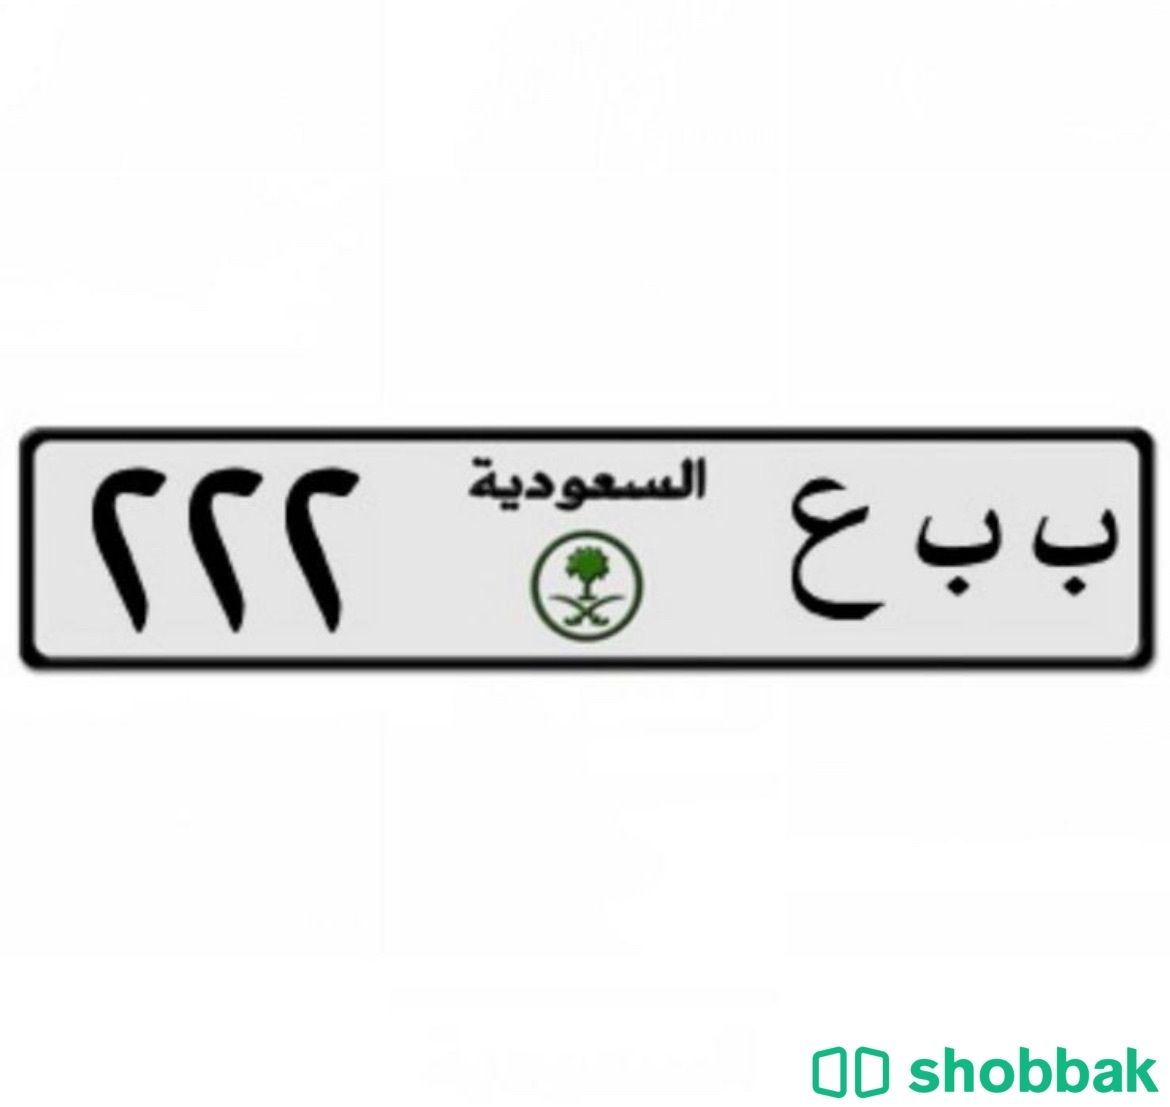 لوحه خصوصي مميزه ( ب ب ع ٢٢٢) الحد ٥٥ للصامل التواصل على الرقم : ٠٥٠٠٥٤٩٣١٣ Shobbak Saudi Arabia